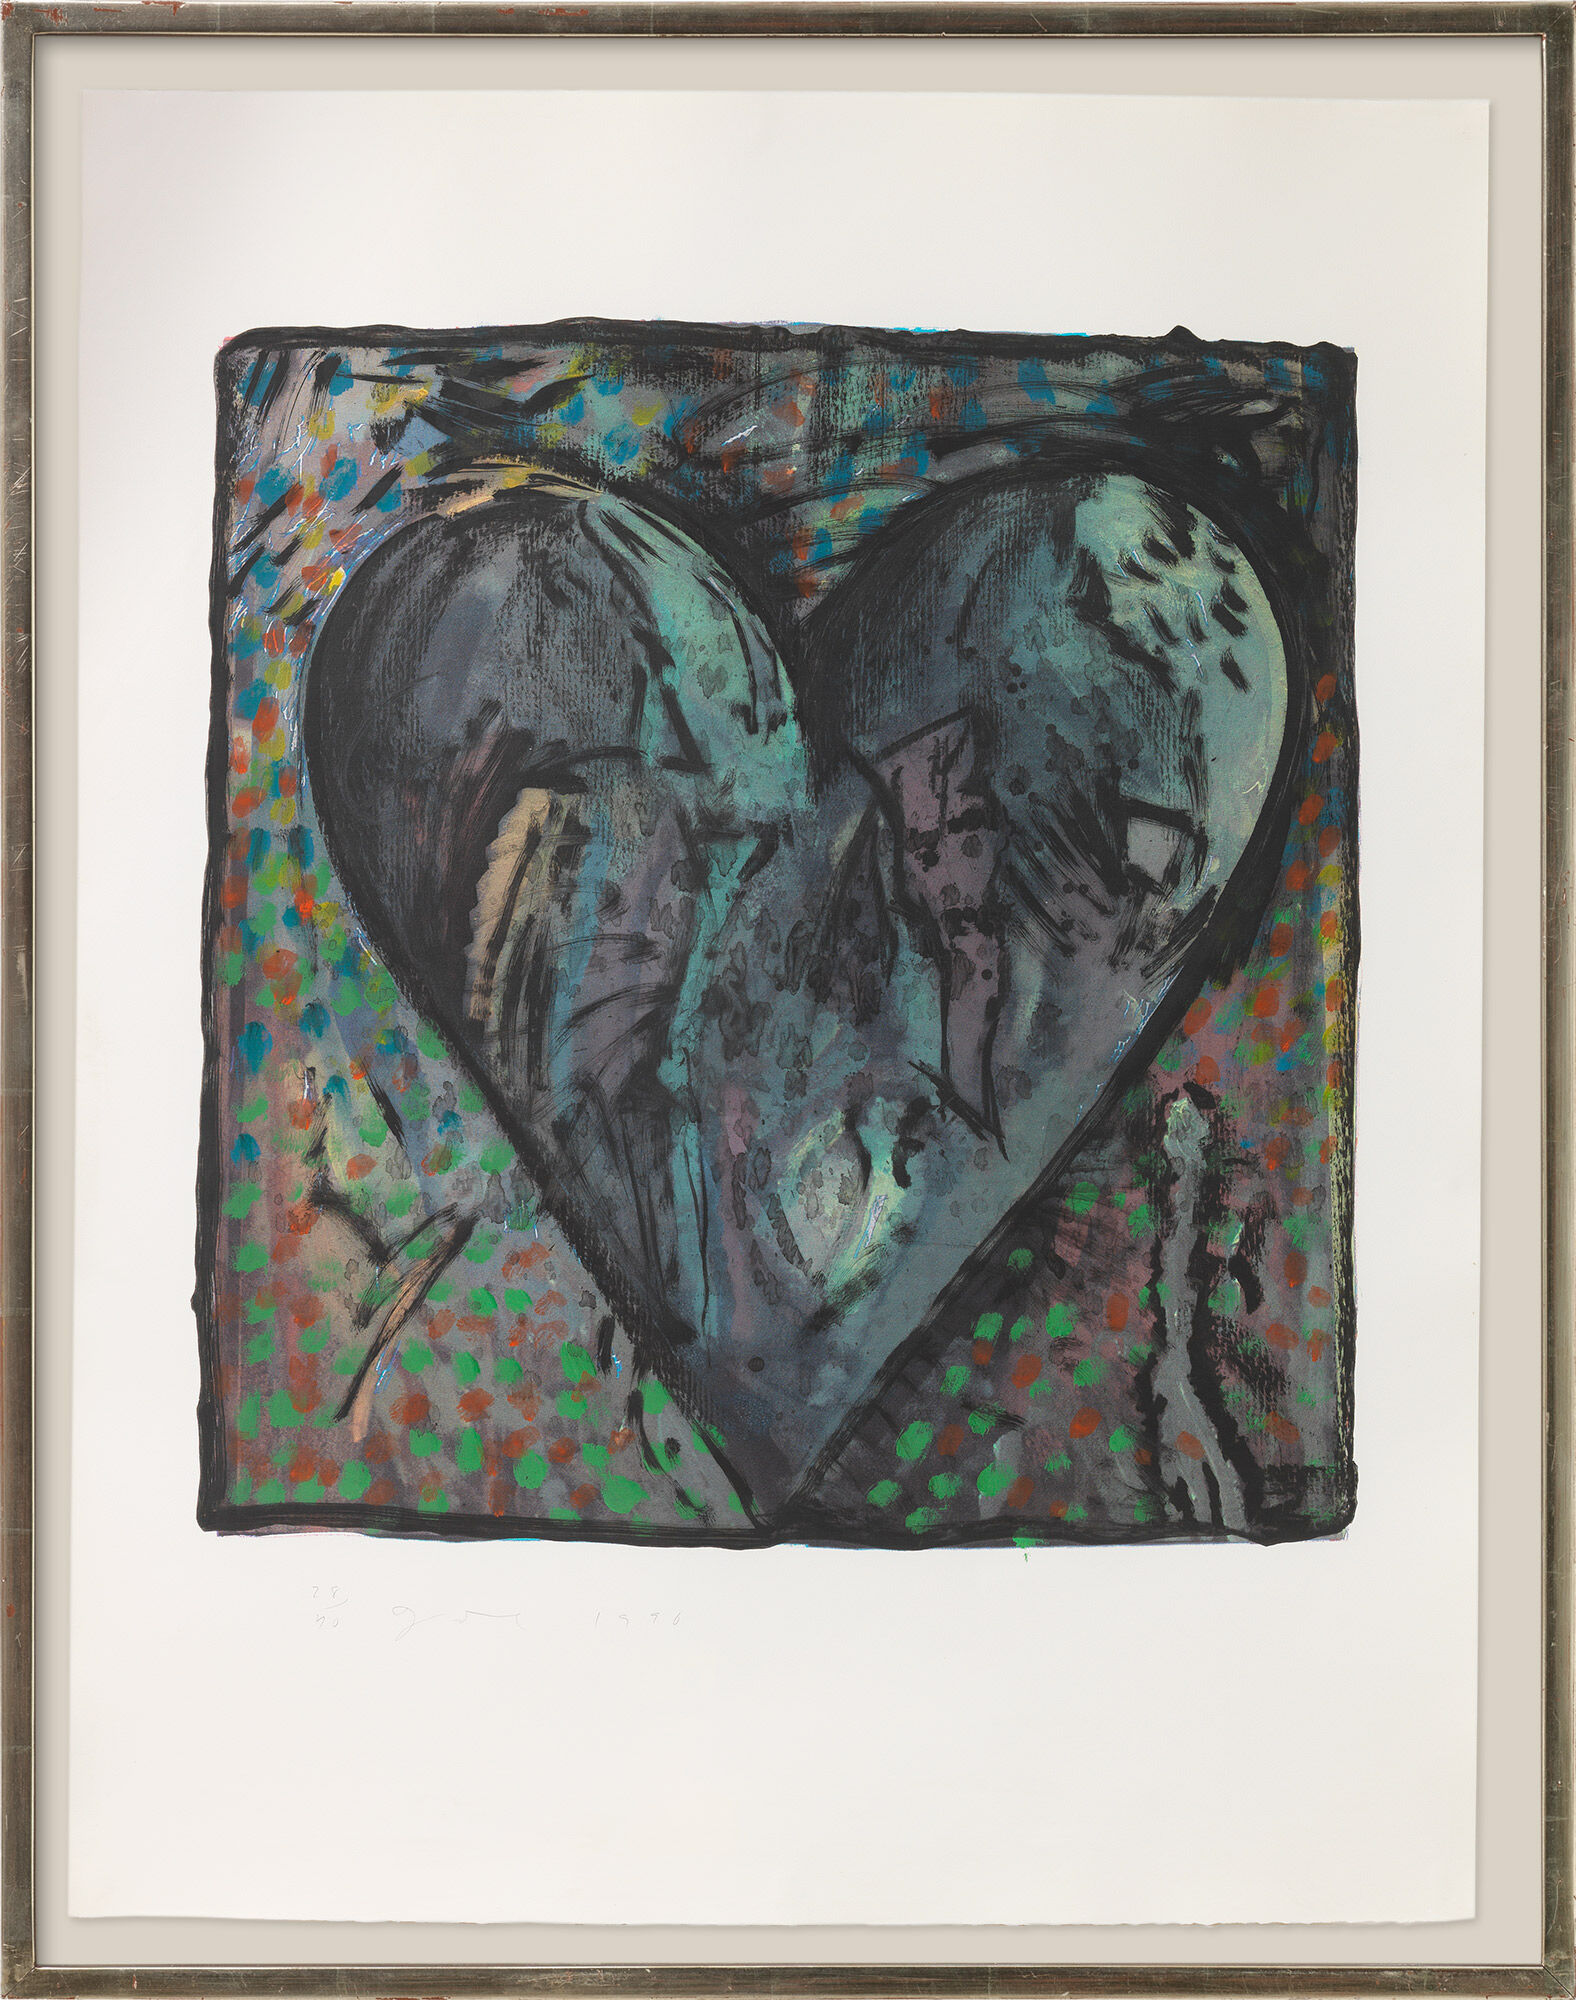 Bild "The Hand-Coloured Viennese Hearts VI" (1990) von Jim Dine